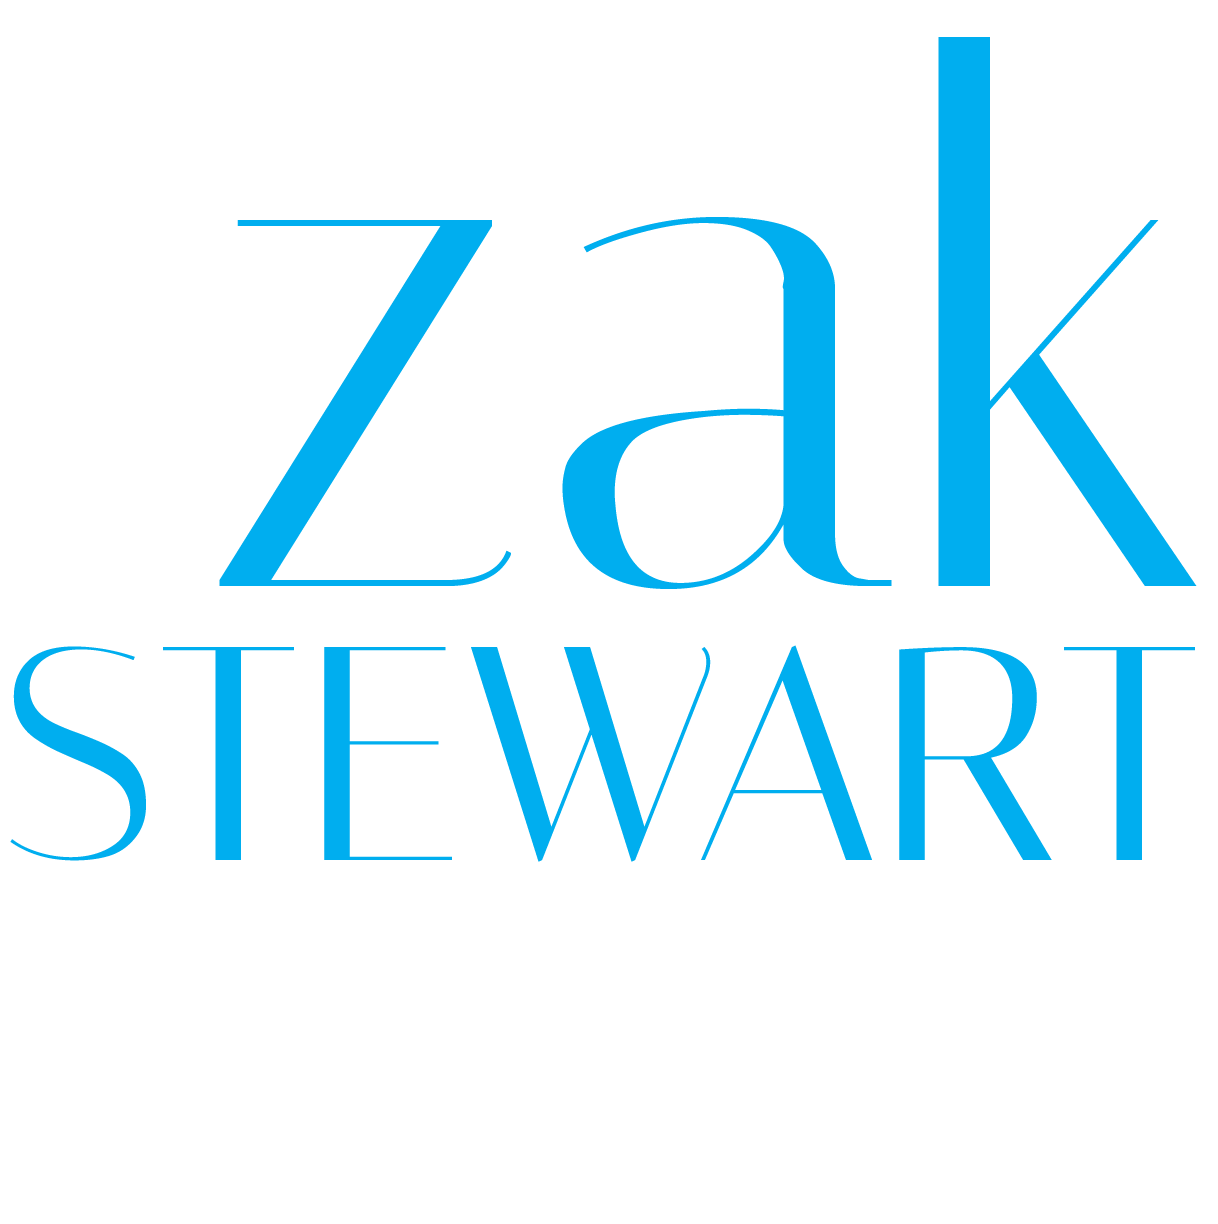 Zak Stewart